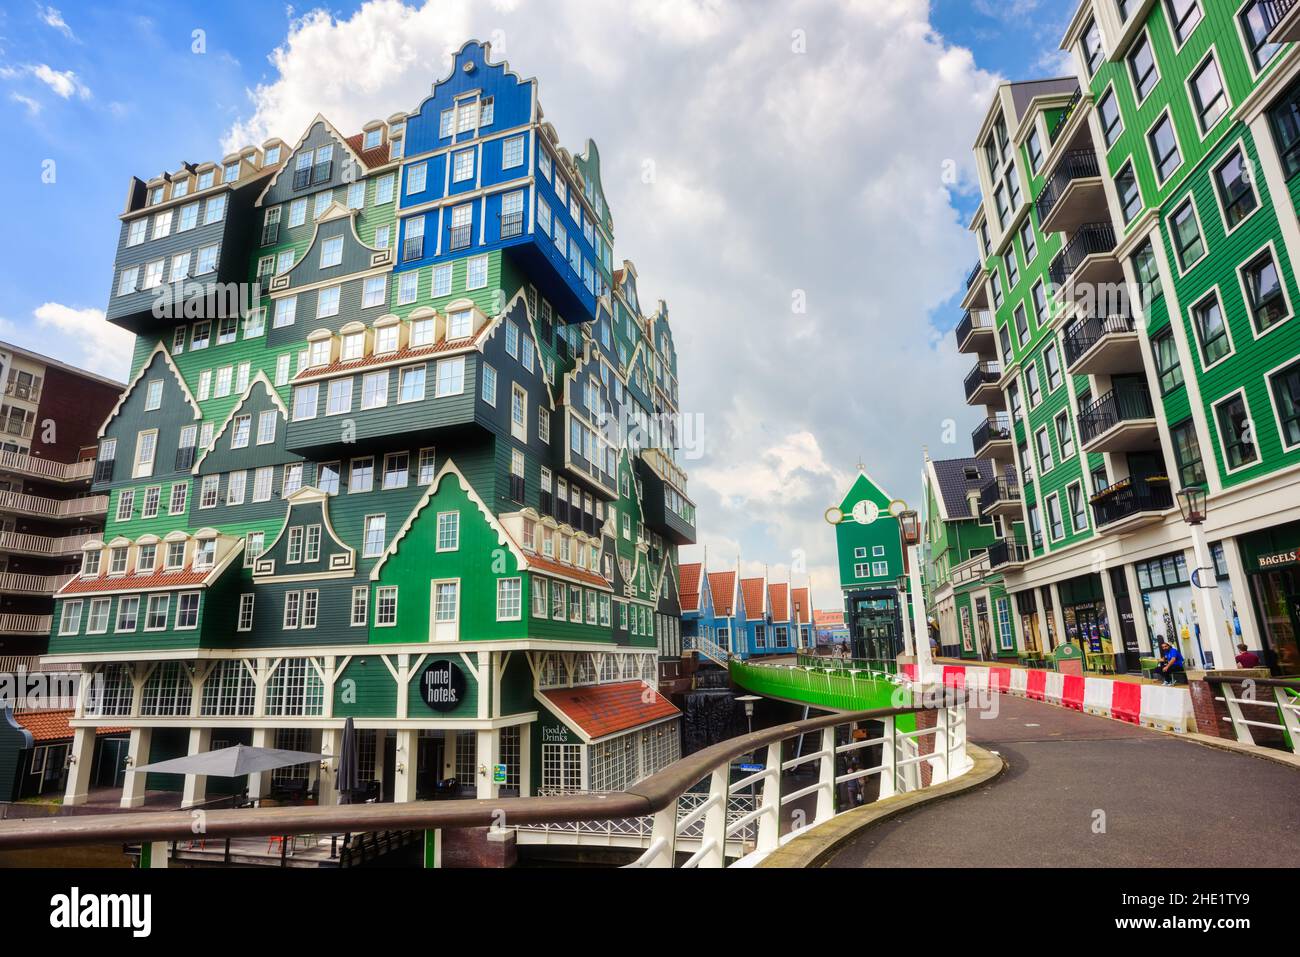 Zaandam, pays-Bas - 18 juillet 2020 : la ville de Zaandam, connue pour son architecture contemporaine inspirée par la tradition, est une destination populaire d'une journée de voyage f Banque D'Images